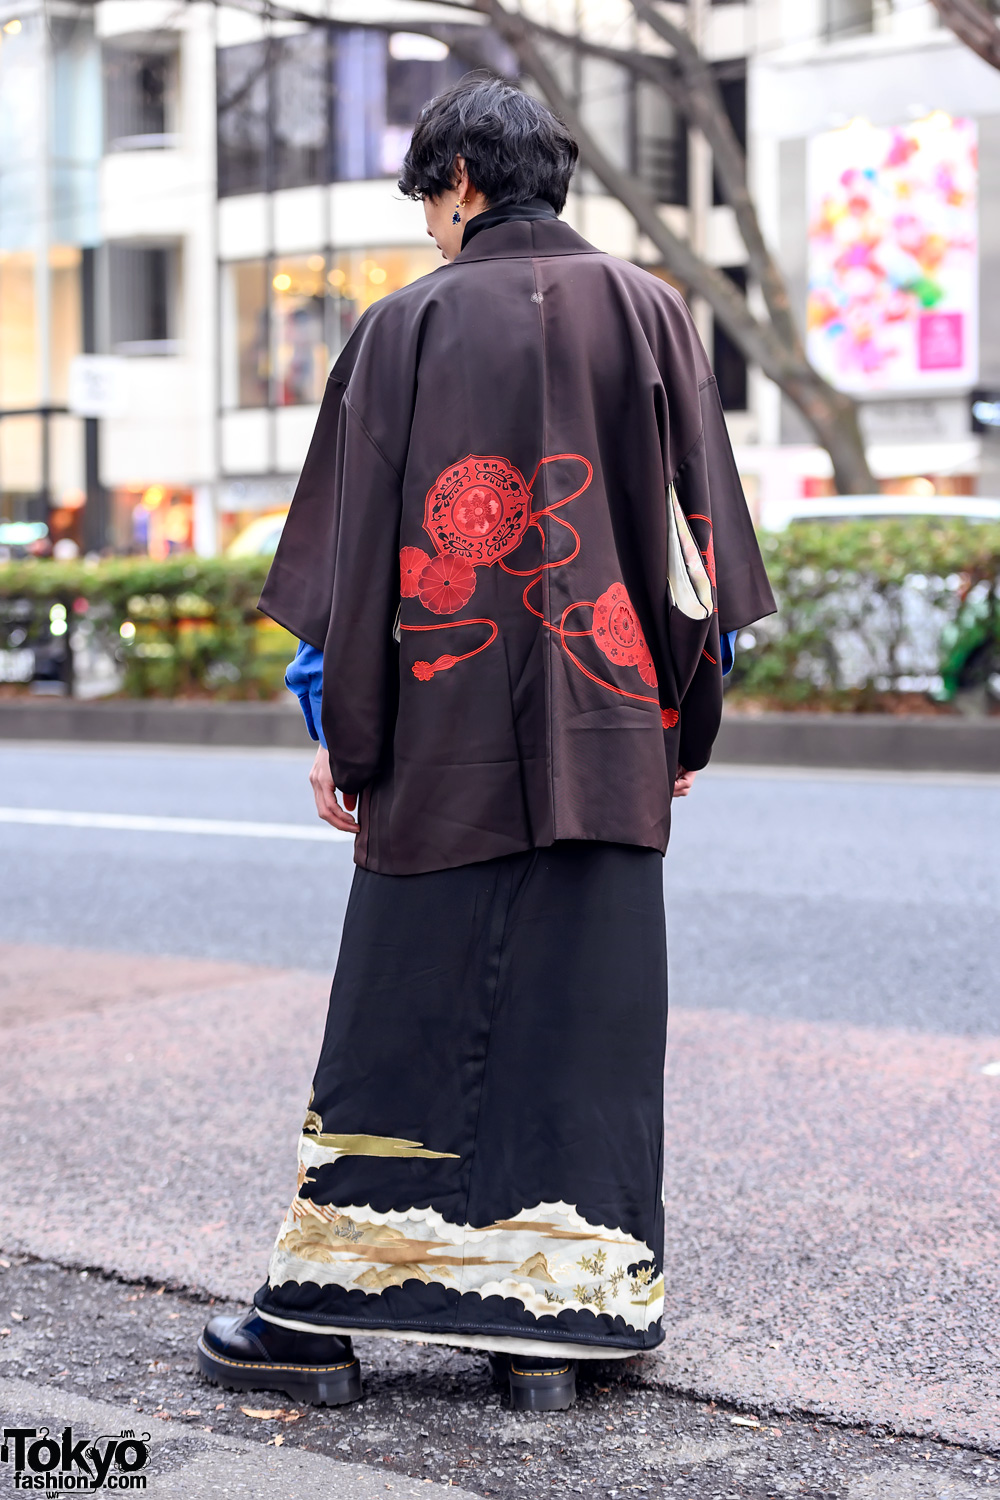 Tokyo Fashion on X: Kenichiro on the street in Harajuku wearing a